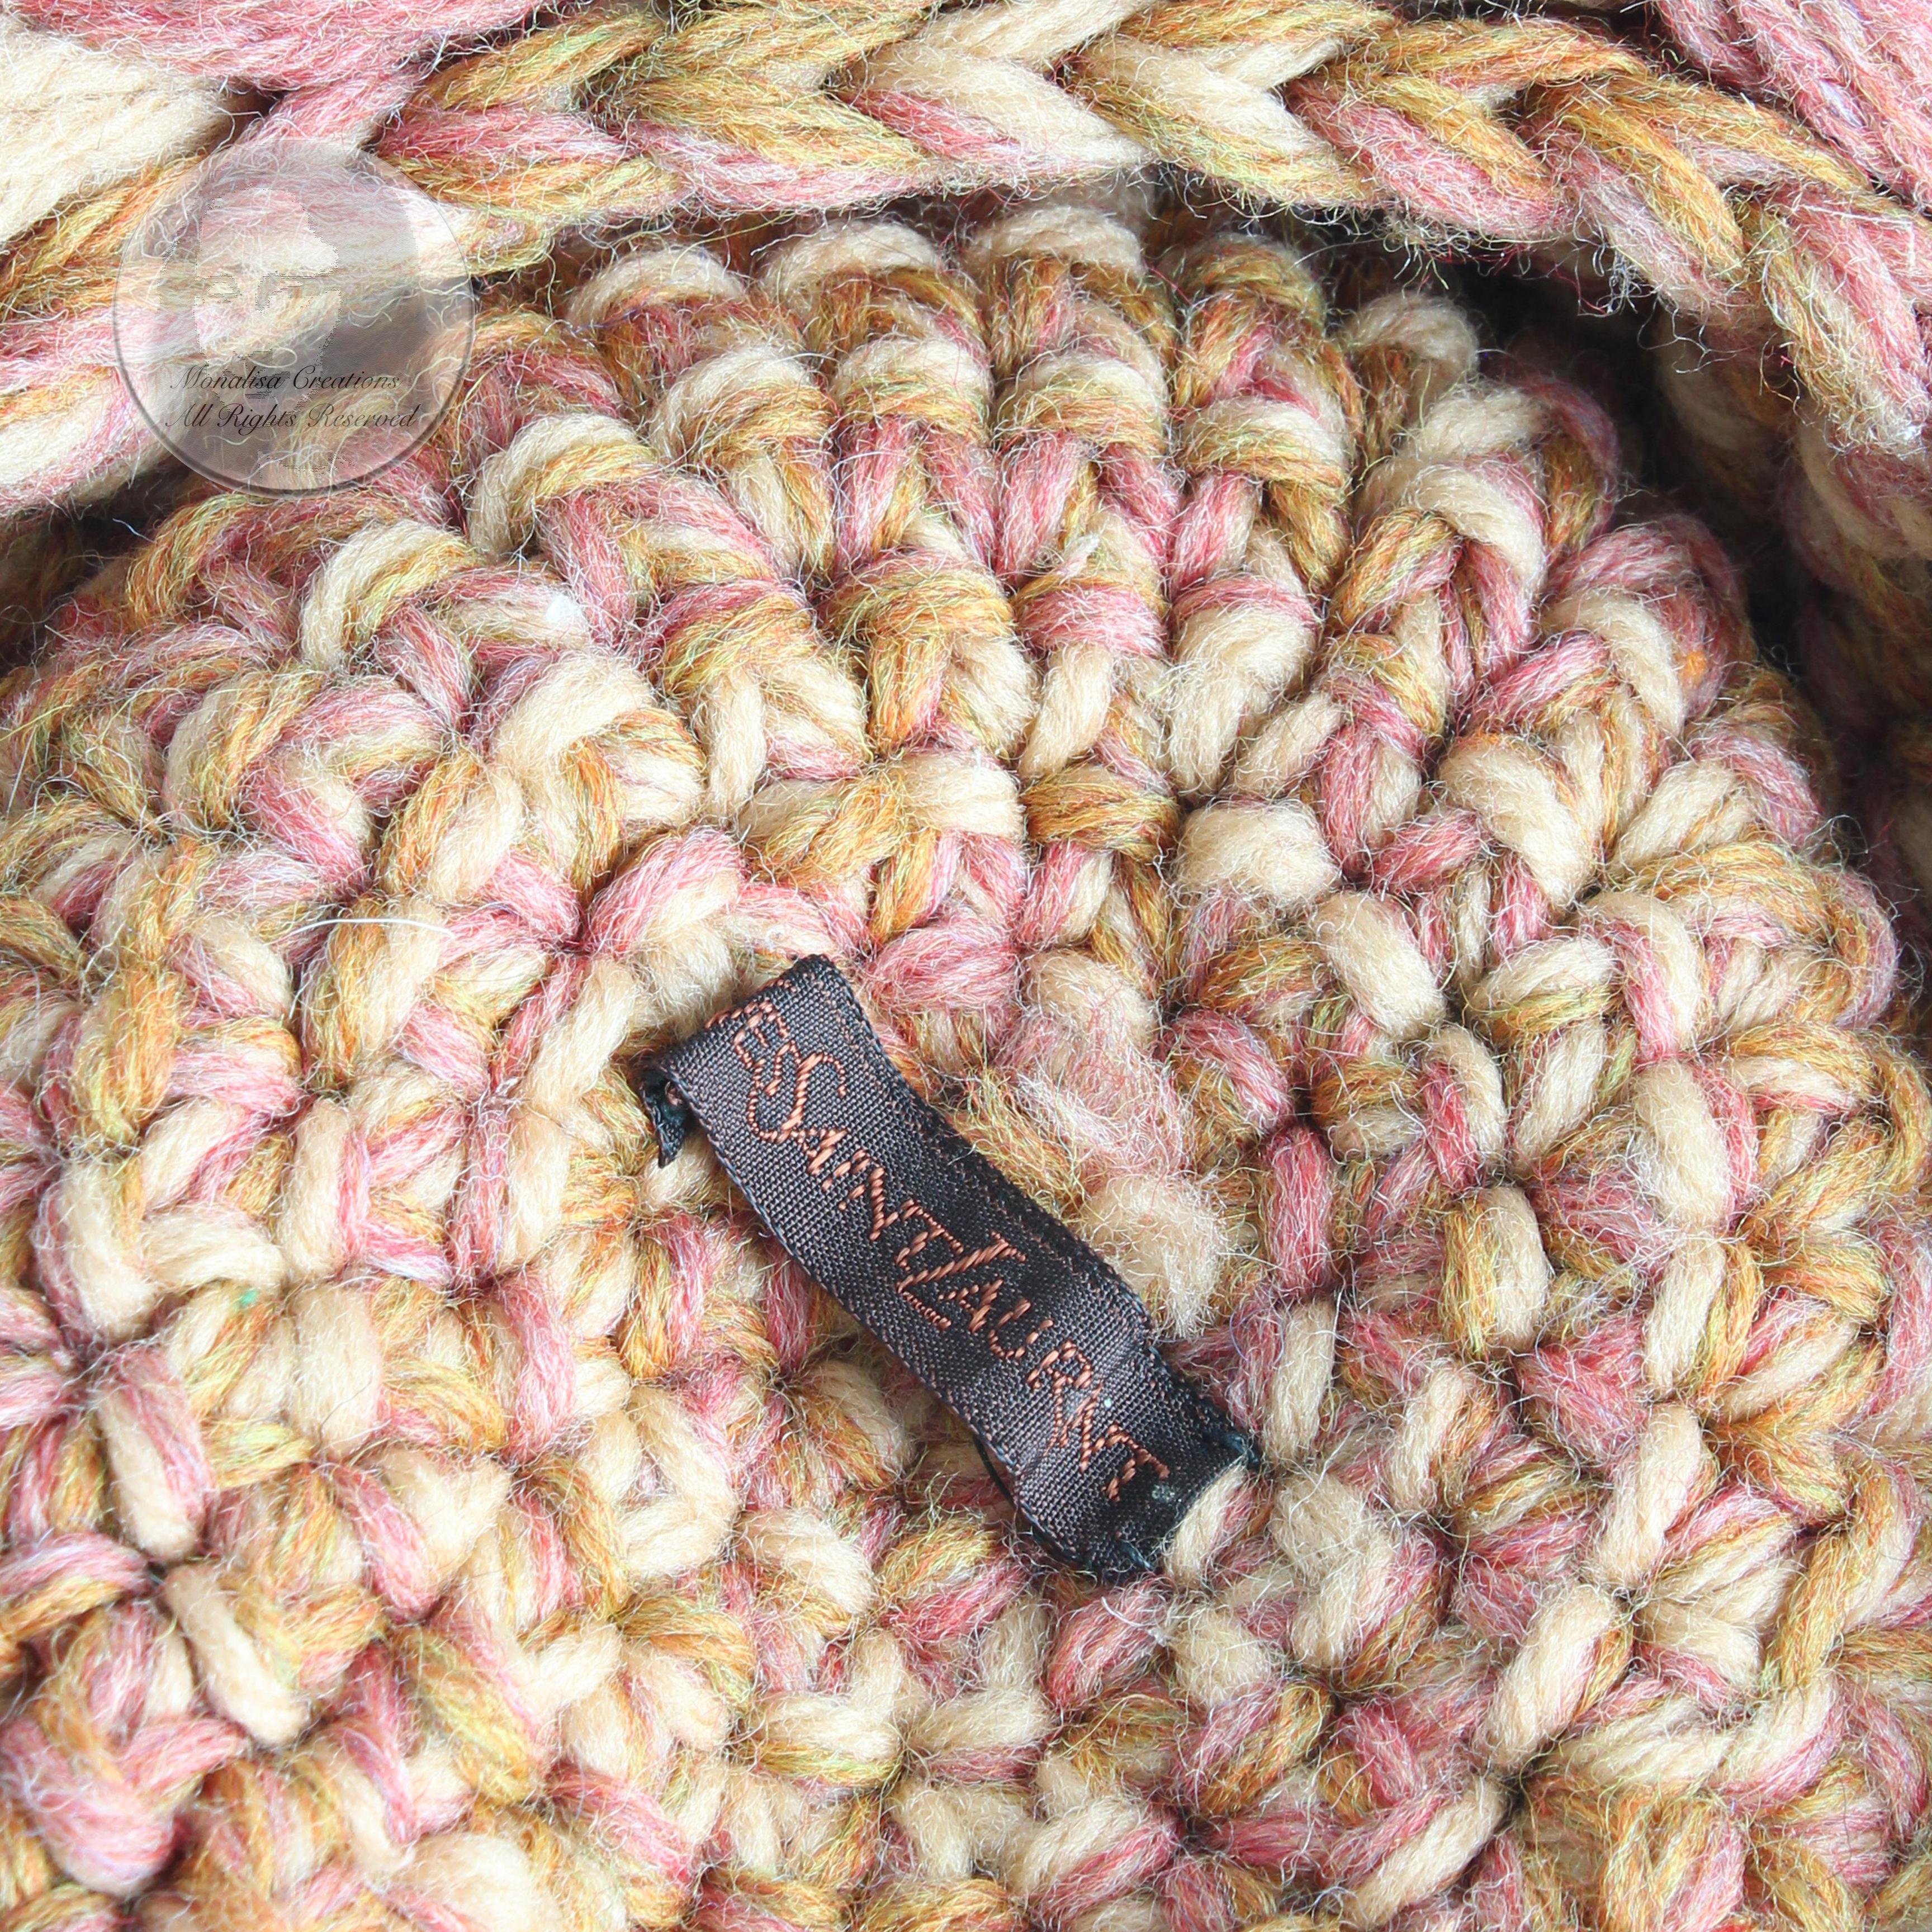 Yves Saint Laurent Knit Hat Multicolor Thick Braid Wool Cap Vintage 1970s Rare  10